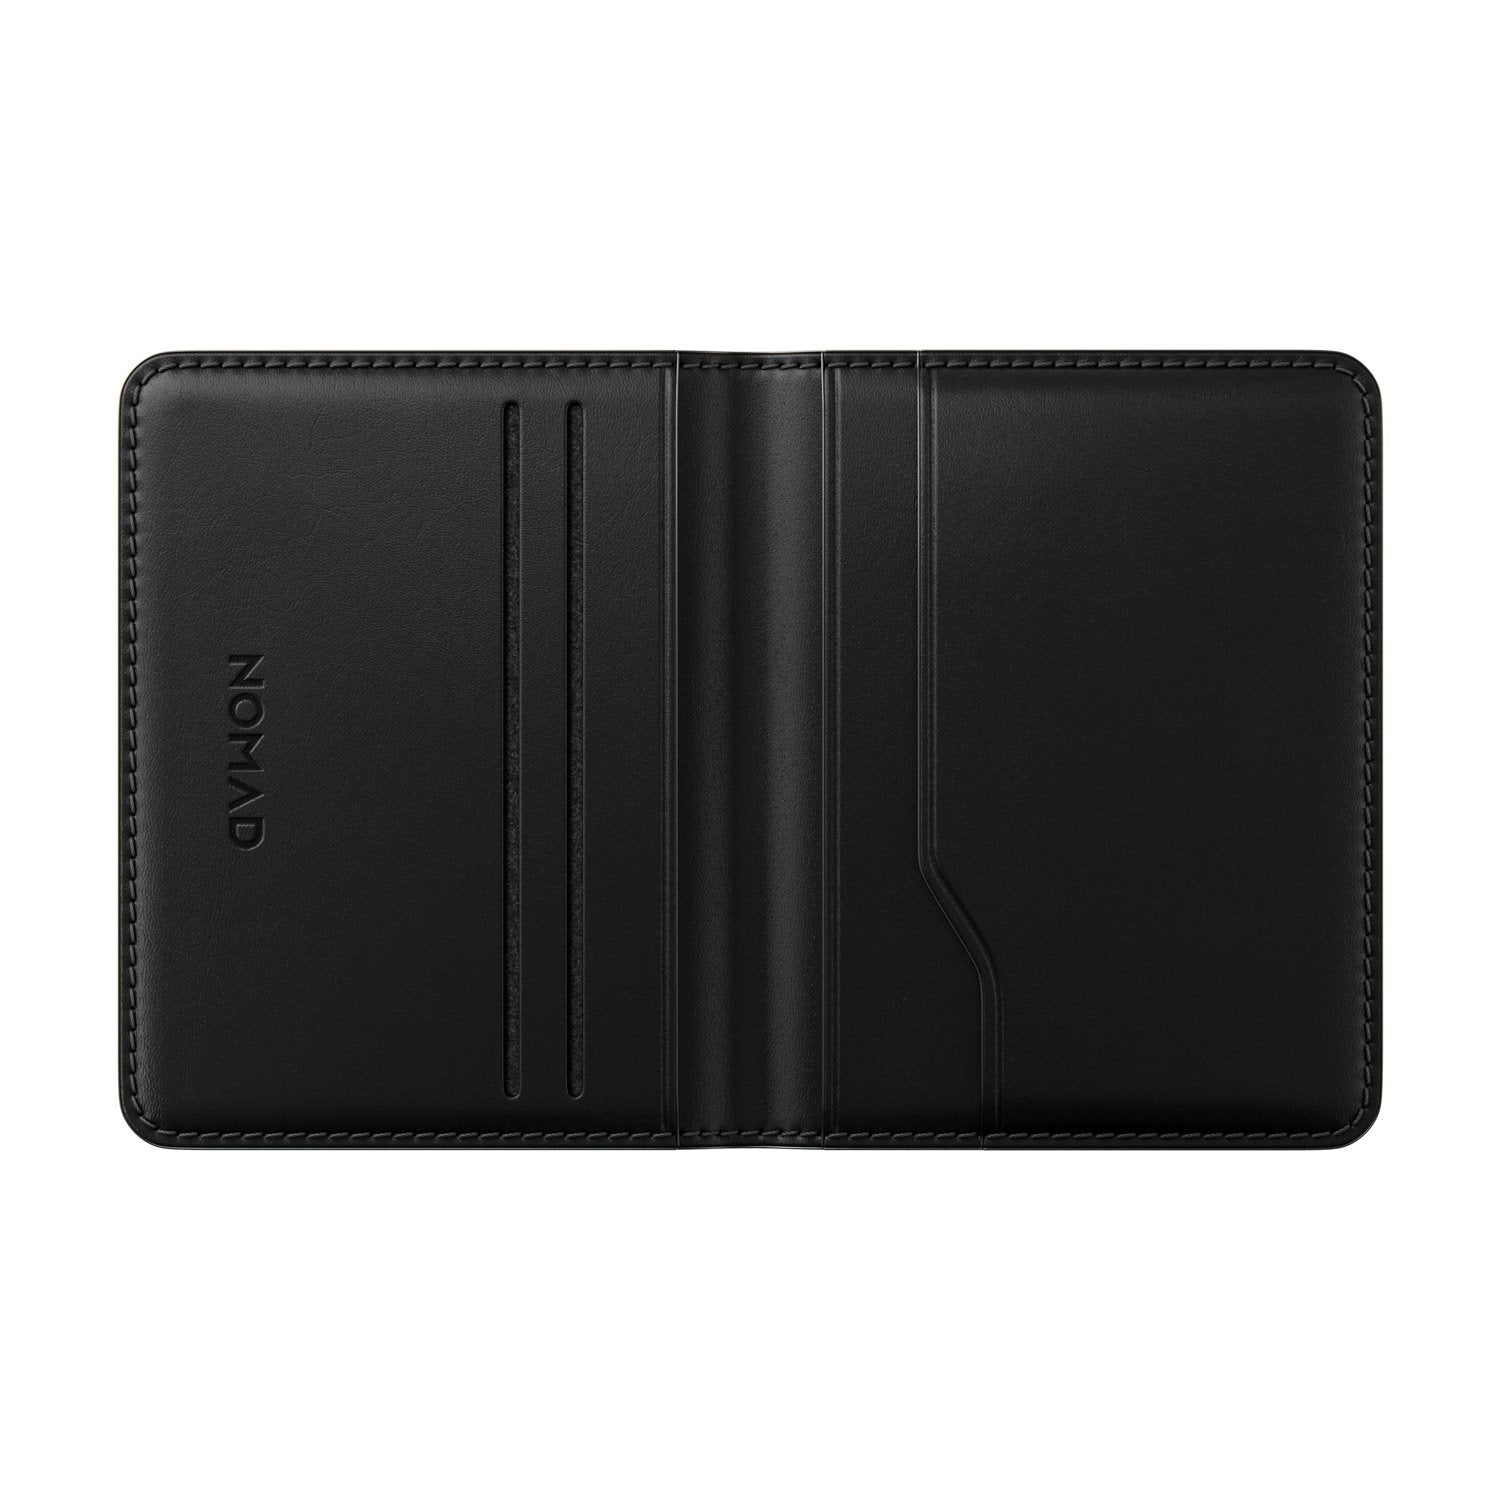 Nomad Horween Leather Card Wallet Plus, Black Default Nomad 